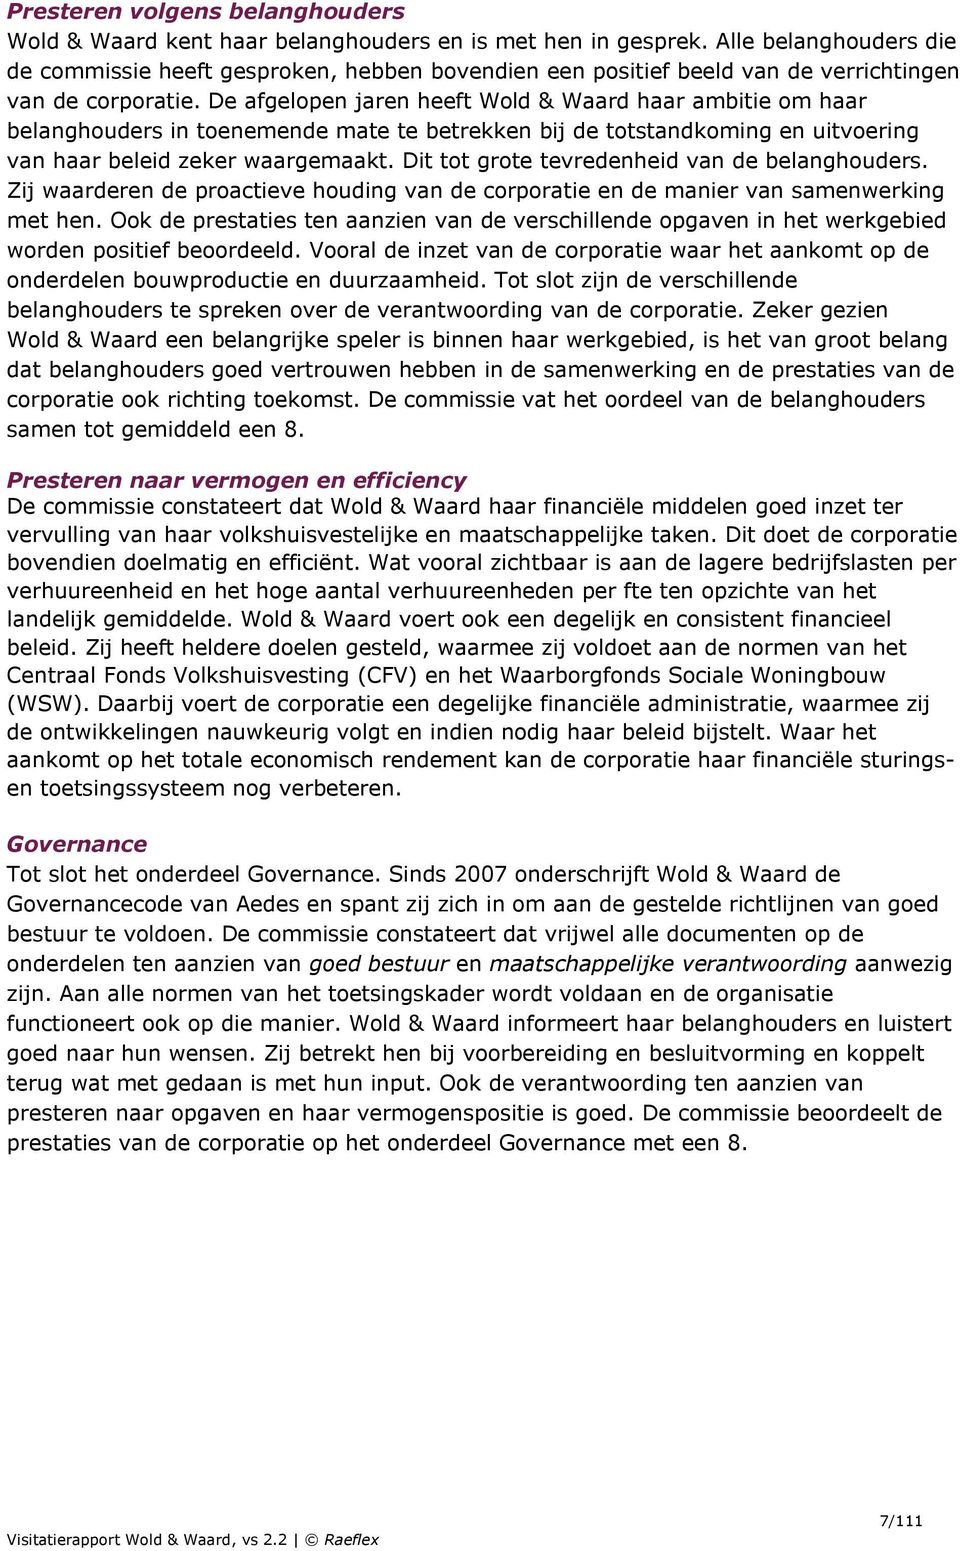 De afgelopen jaren heeft Wold & Waard haar ambitie om haar belanghouders in toenemende mate te betrekken bij de totstandkoming en uitvoering van haar beleid zeker waargemaakt.